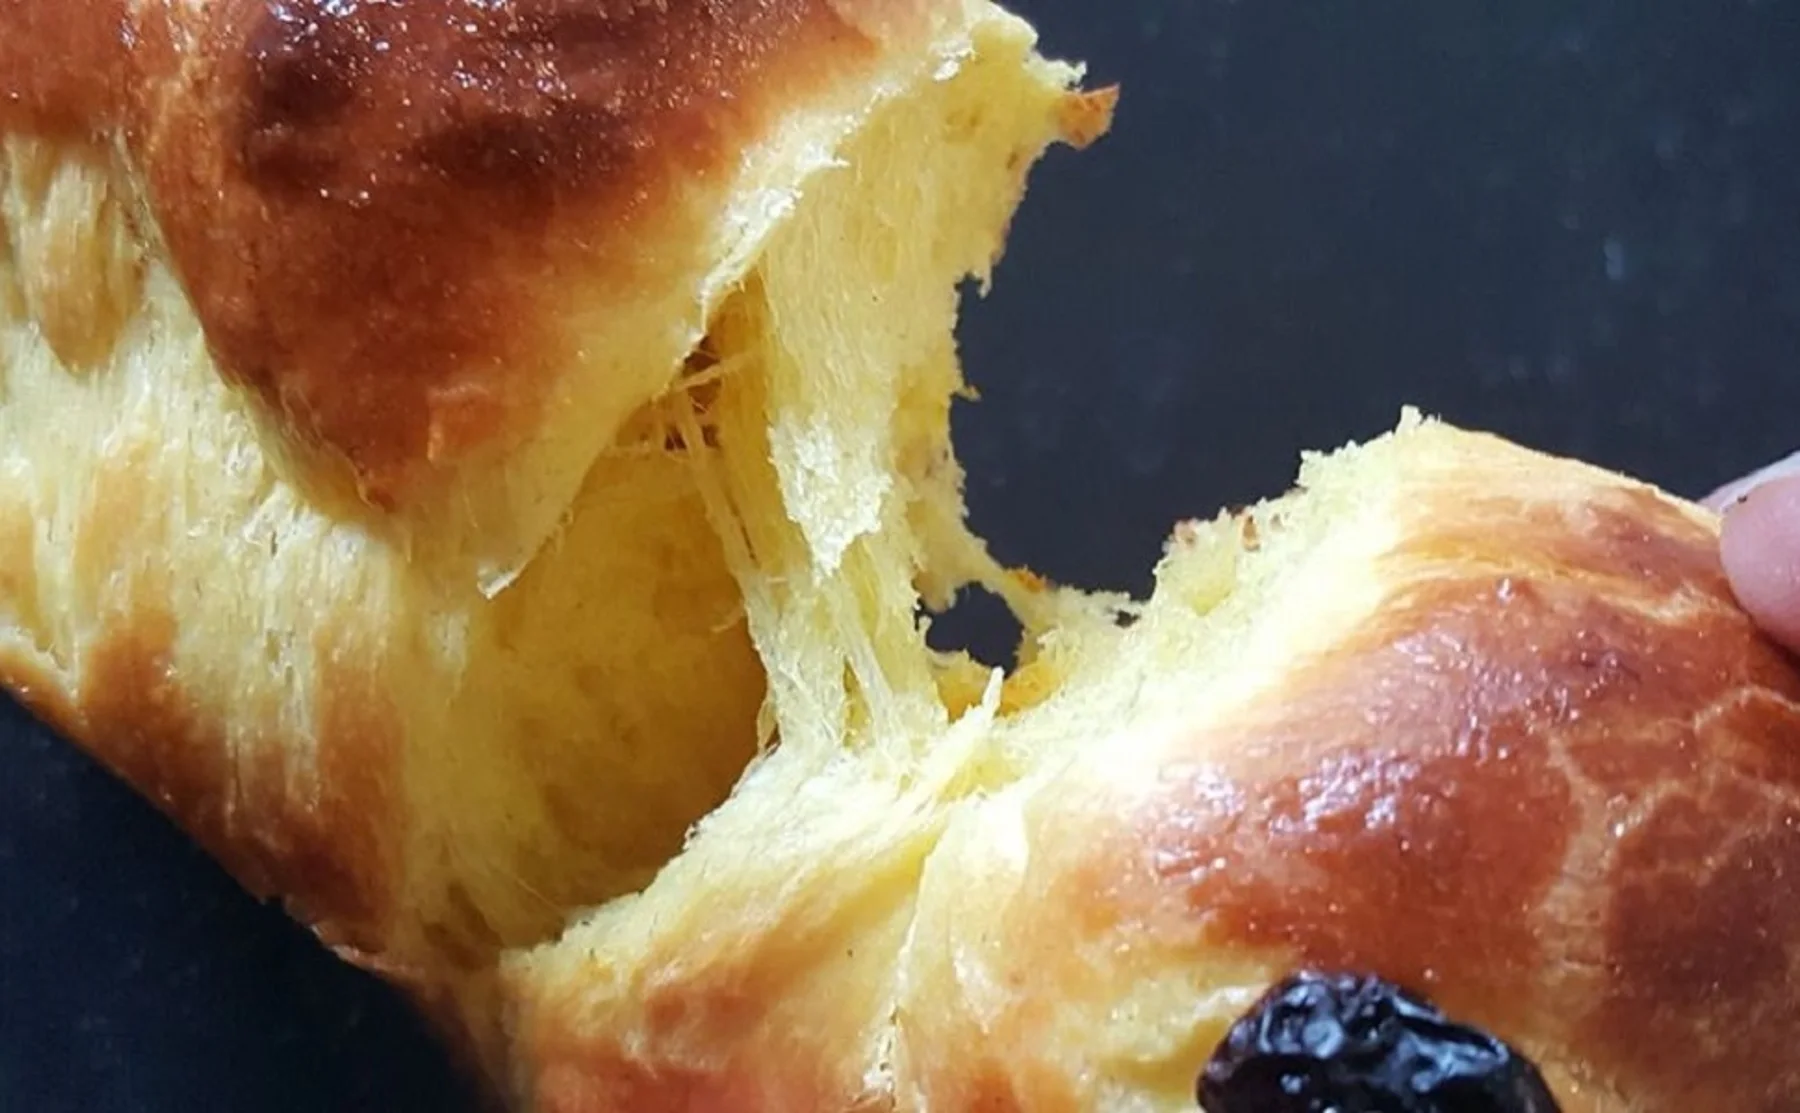 Make Babka, pain suisse, tarte au sucre w/ amazing brioche - 1382189